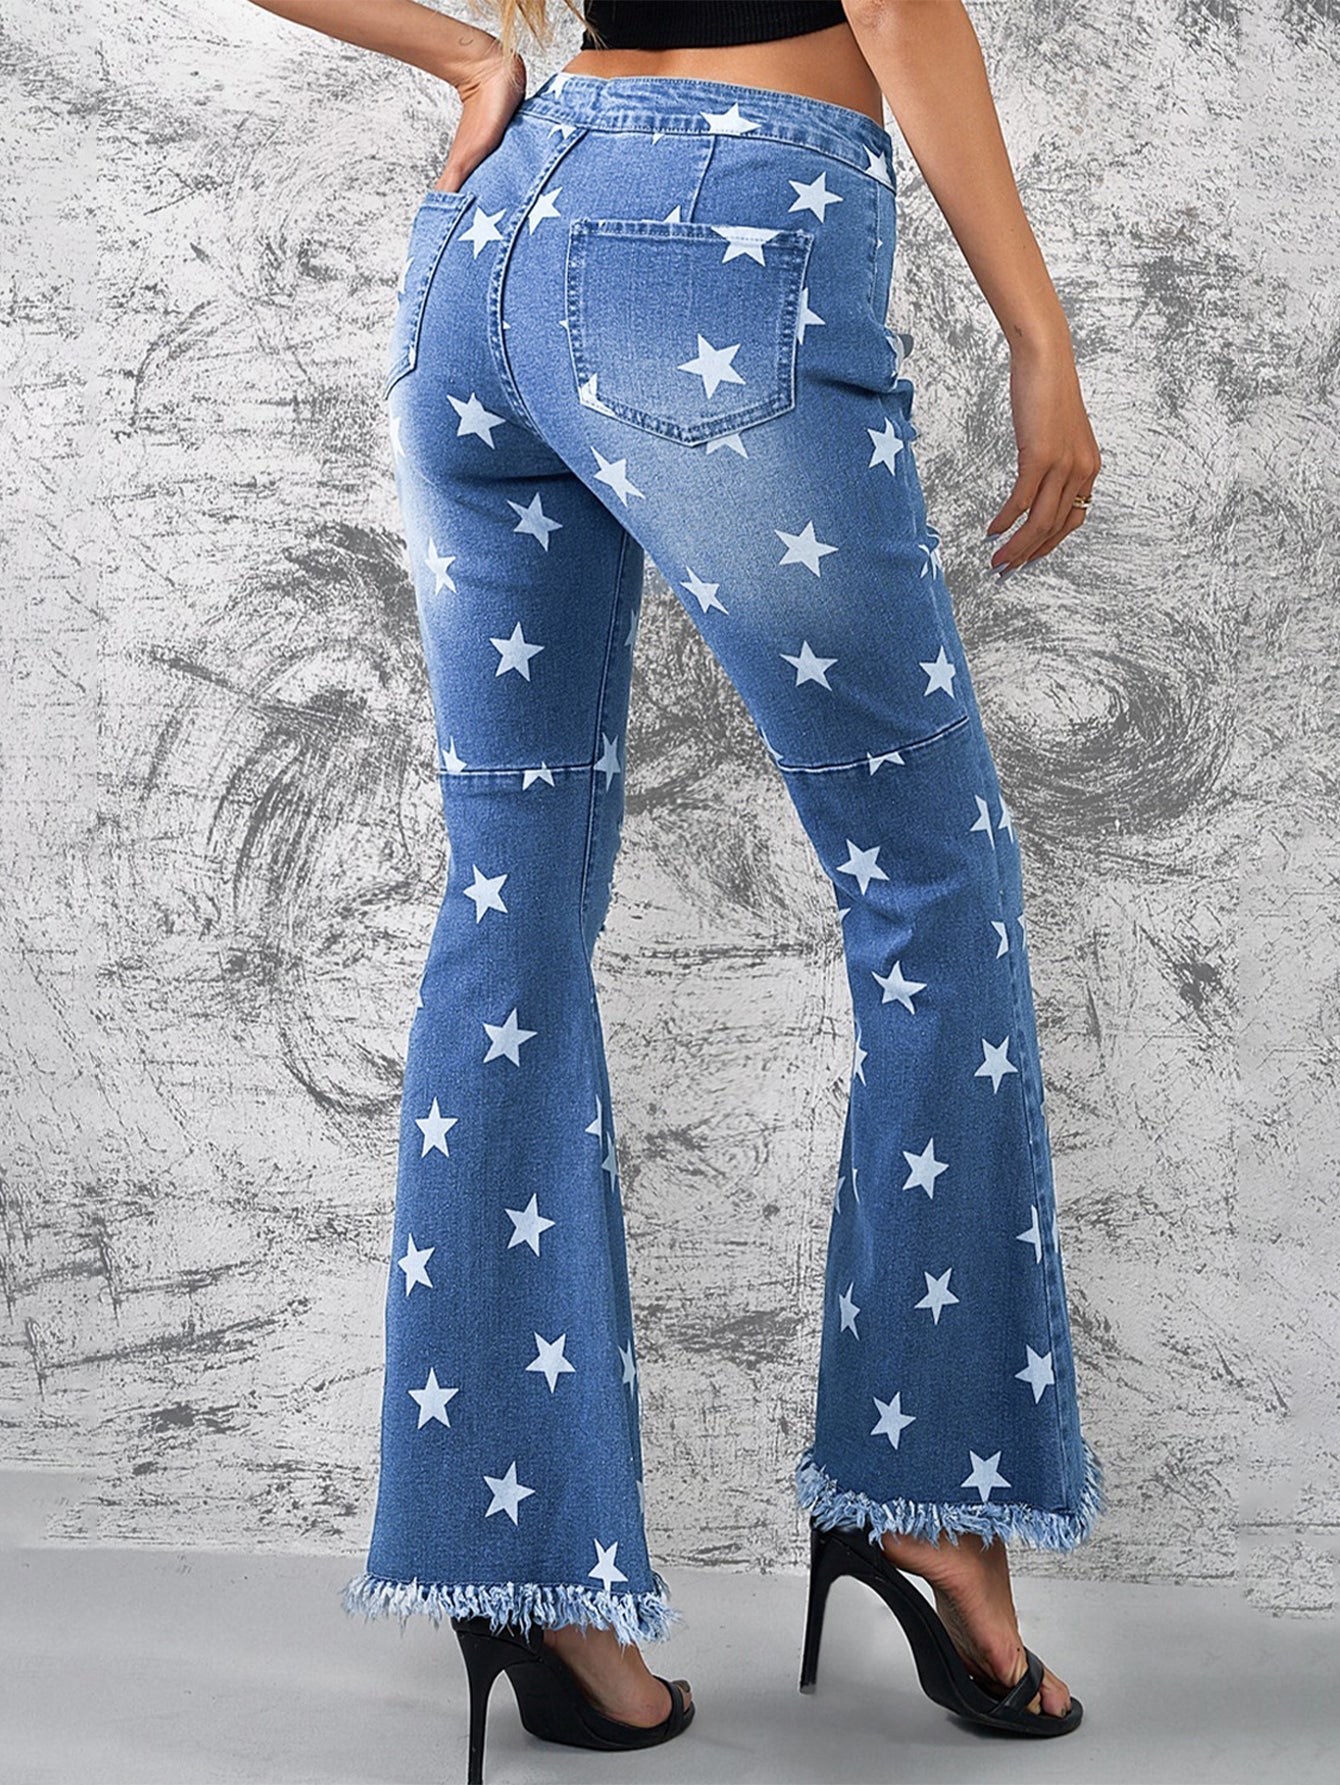 Star Print Distressed Raw Hem Flare Jeans Sai Feel